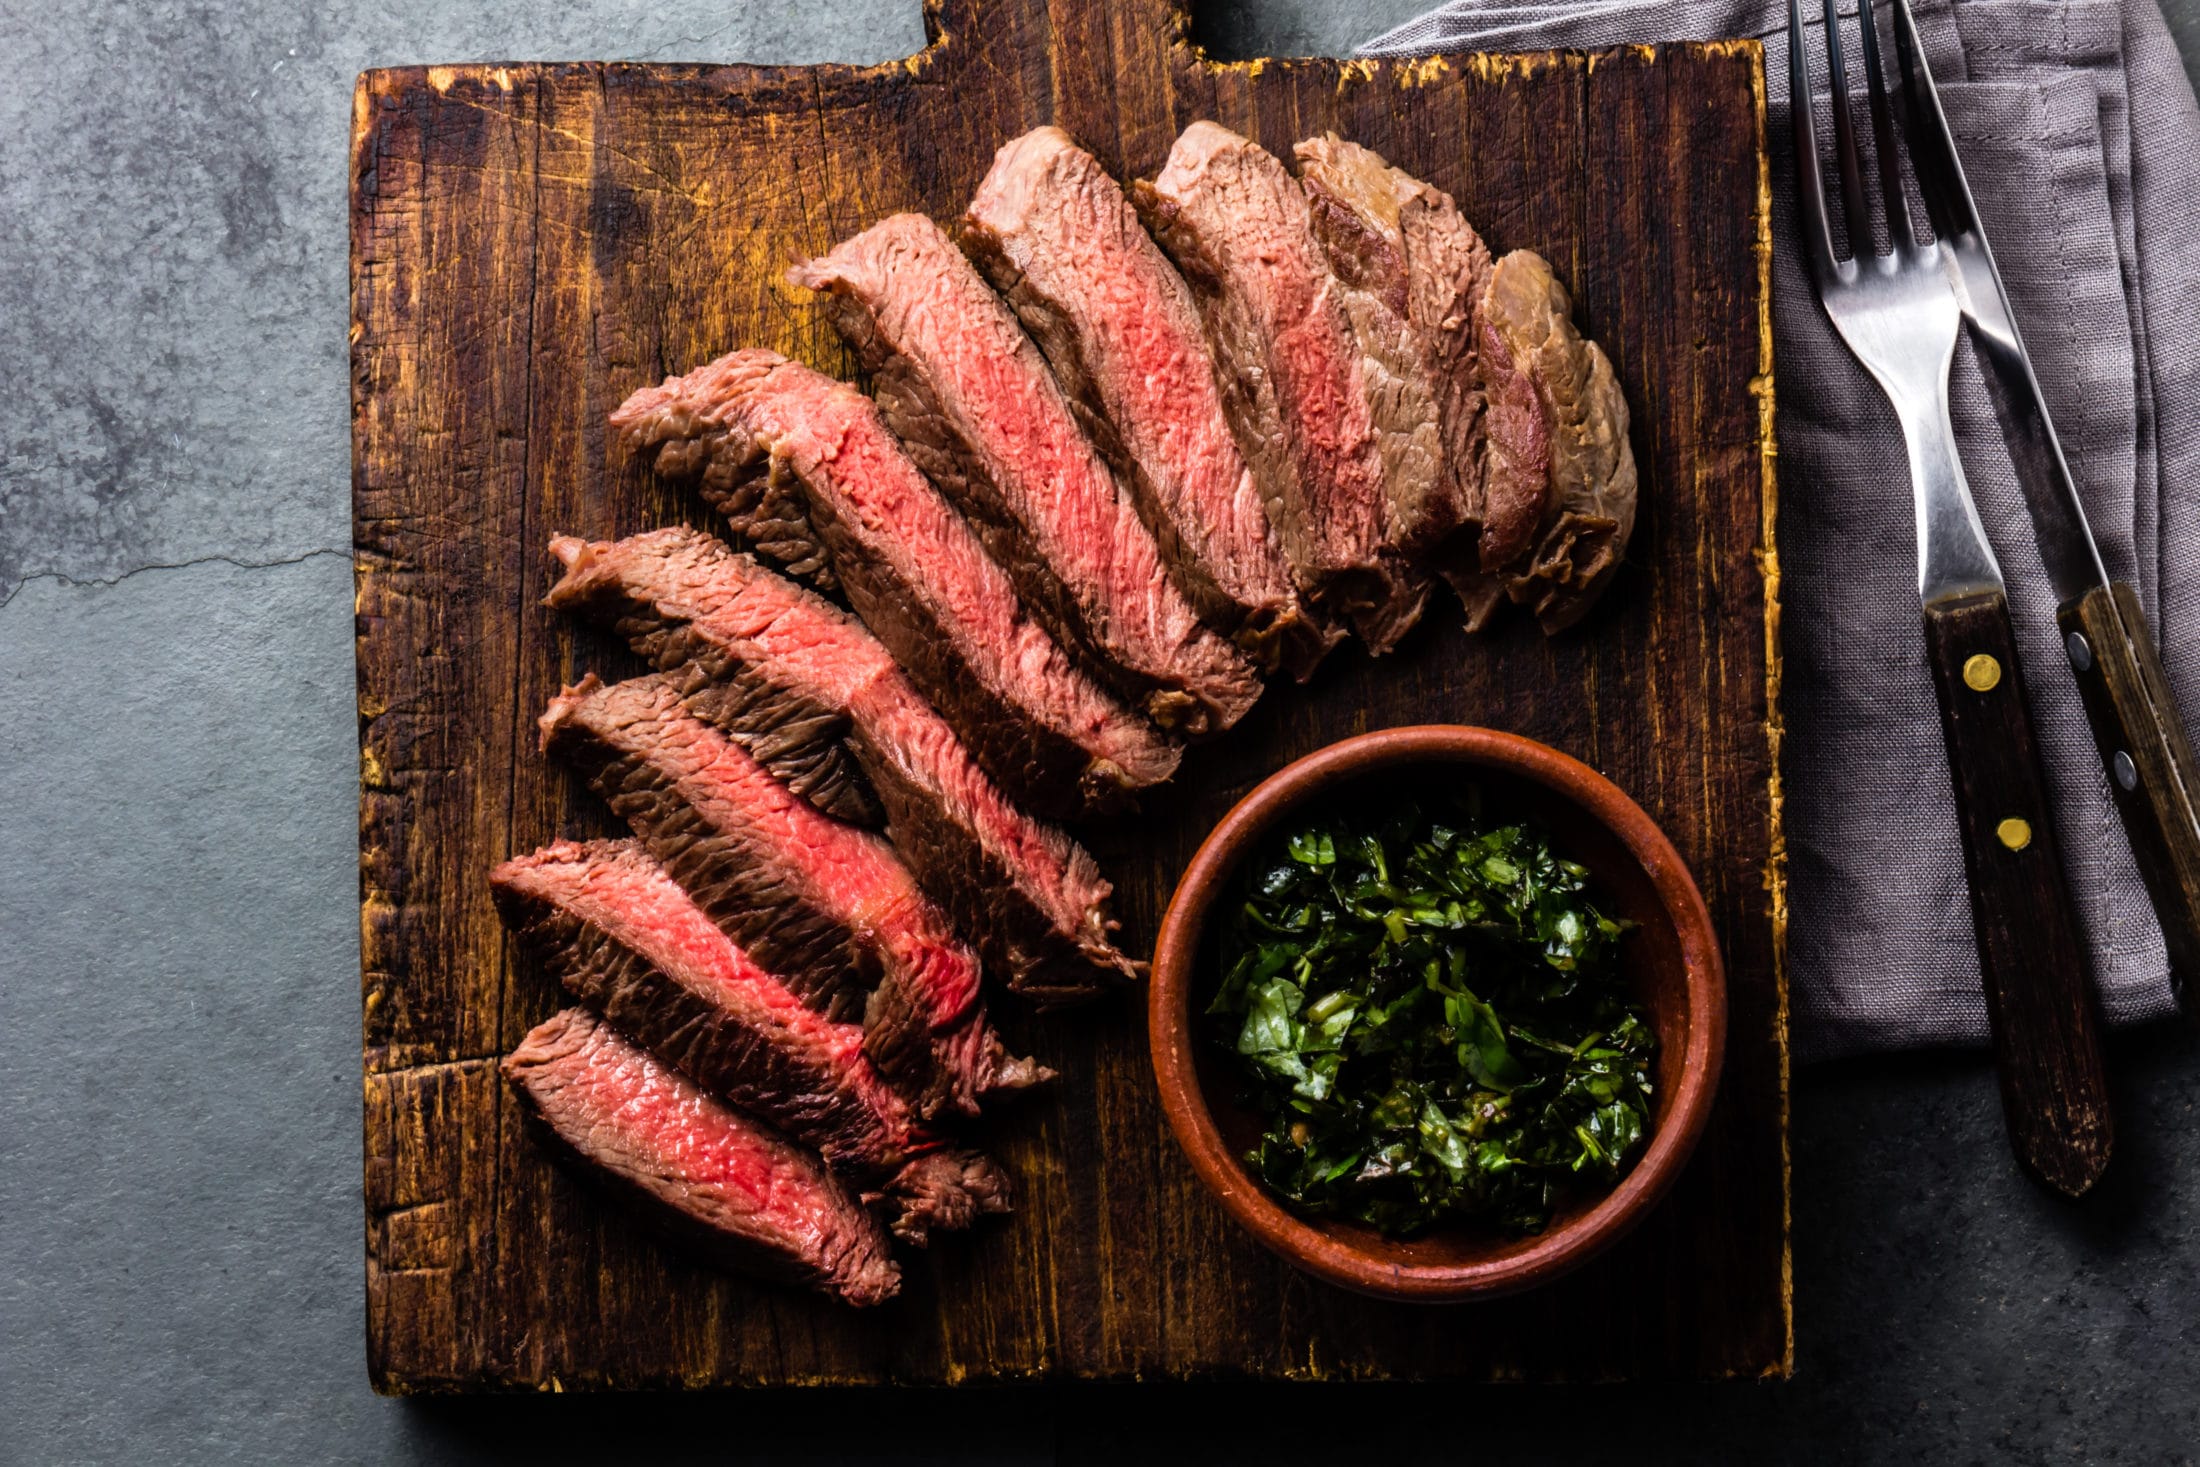 Széll Tamás steak-filozófiája, avagy így készül otthon a tökéletes steak - Dining Guide